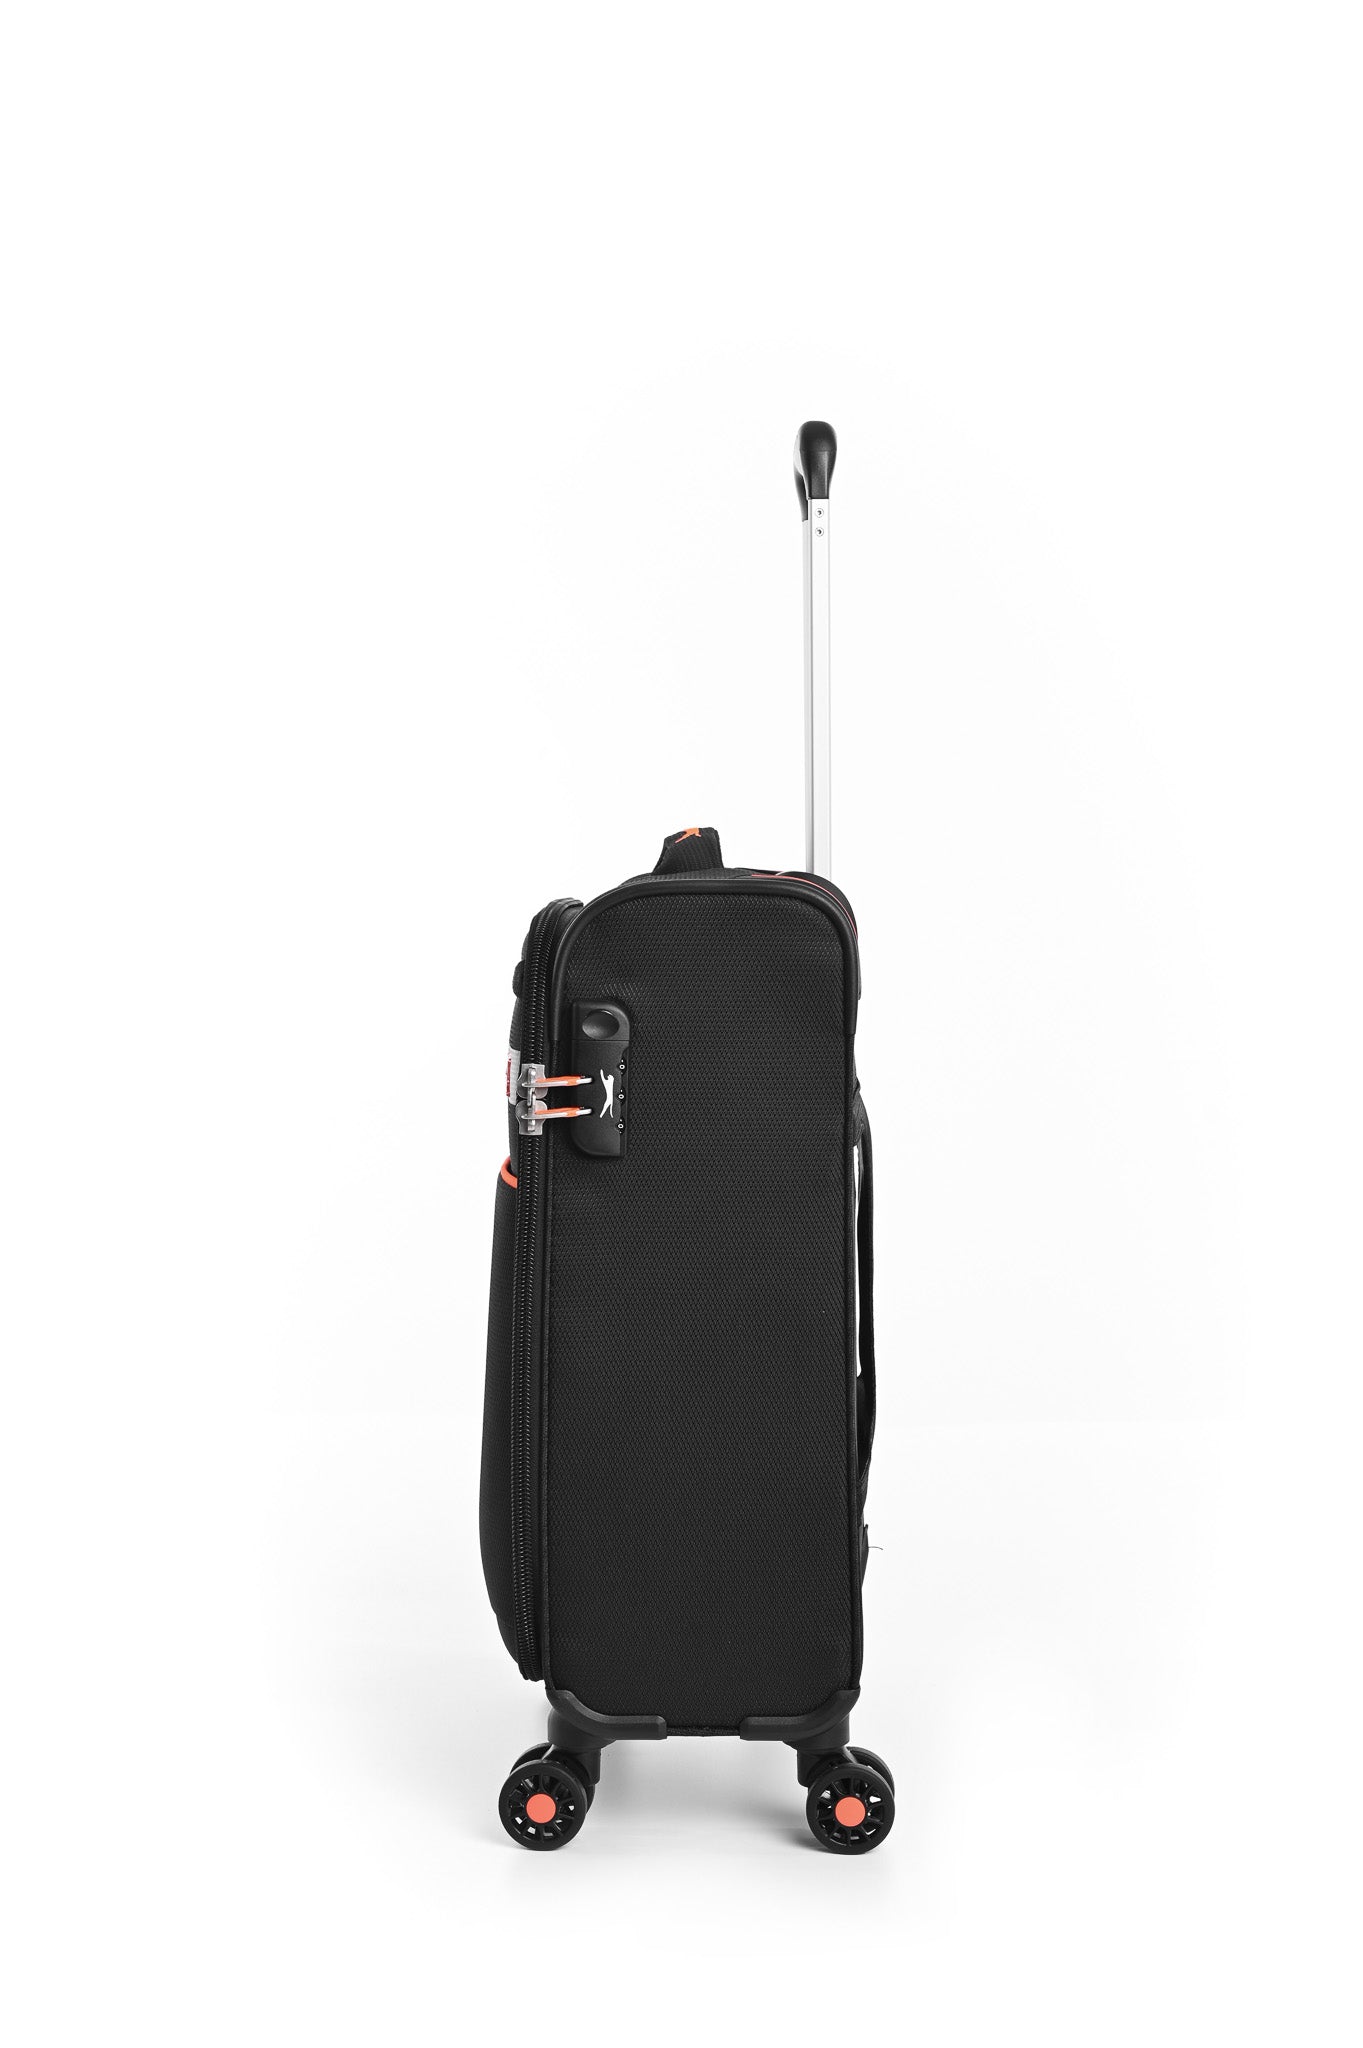 מזוודה טרולי עלייה למטוס ''18.5 דגם BARCELONA בצבע שחור